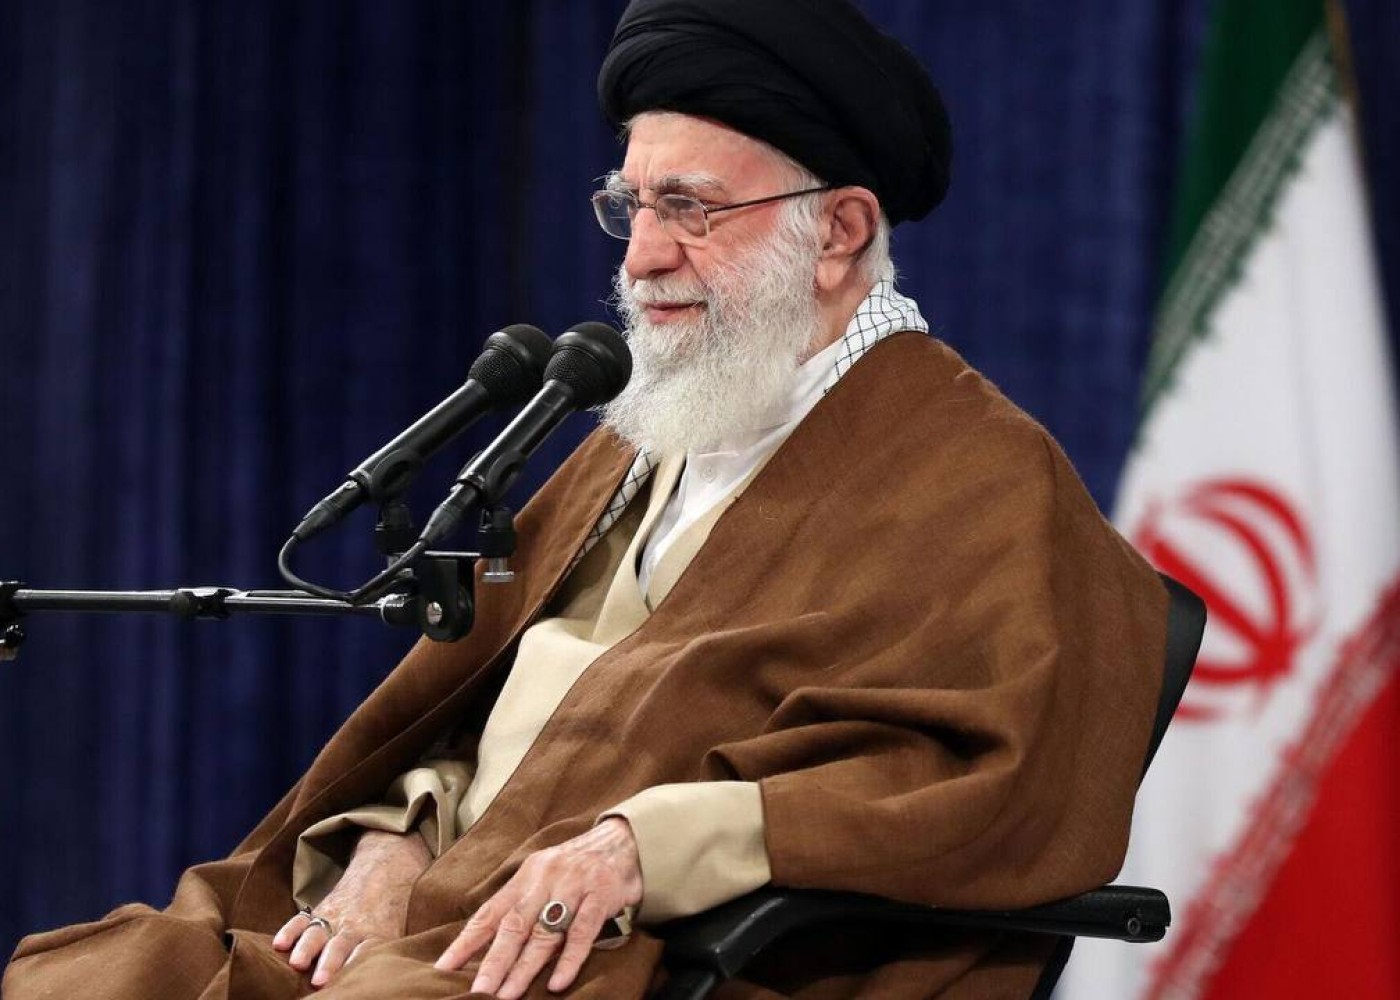 İranın dini lideri Rəisinin cənazəsi üzərində dua oxuyacaq